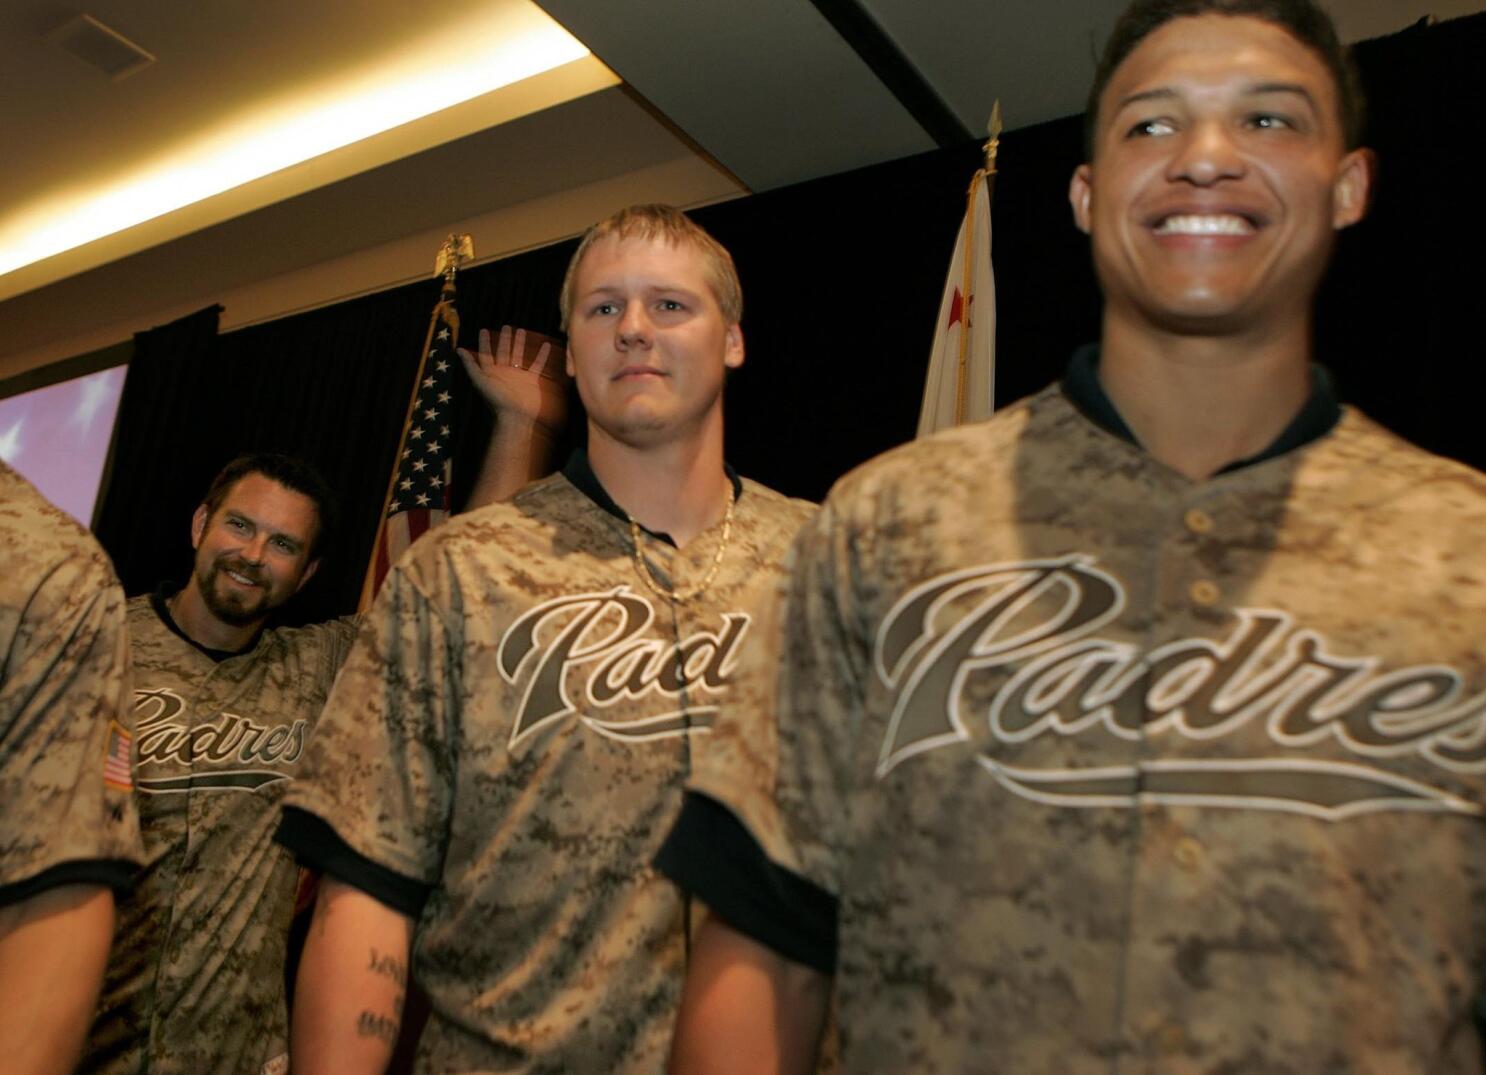 The Padres legendary camo uniforms